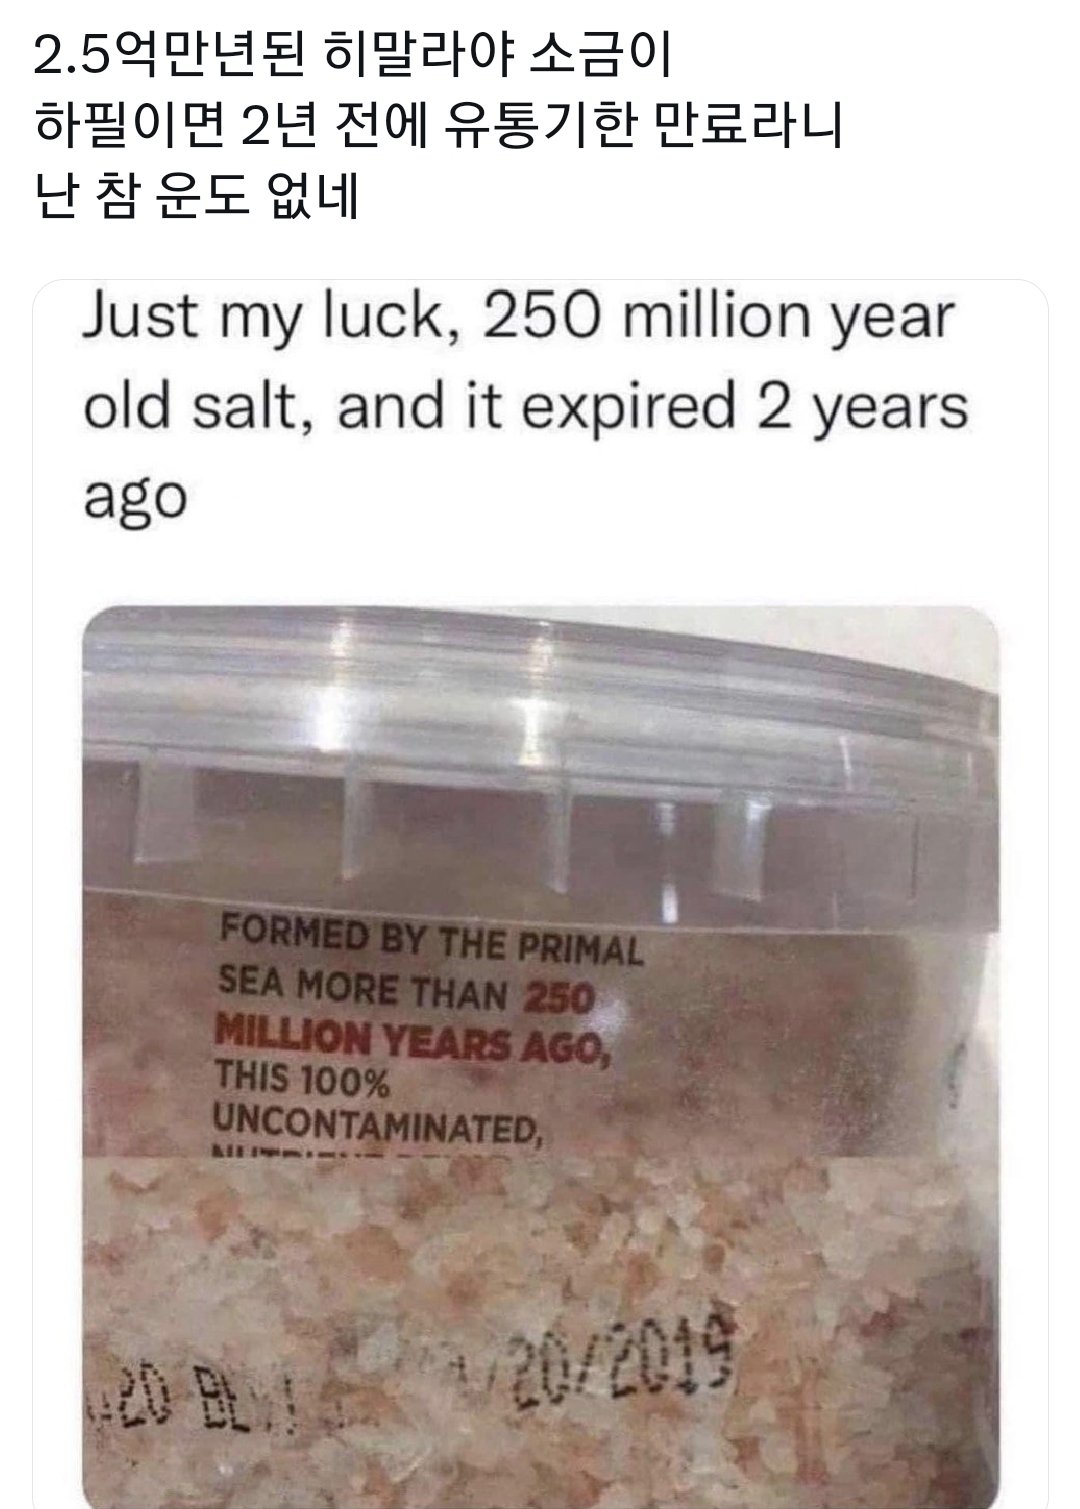 18 2.5억년된 히말라야 소금의 유통기한.jpg